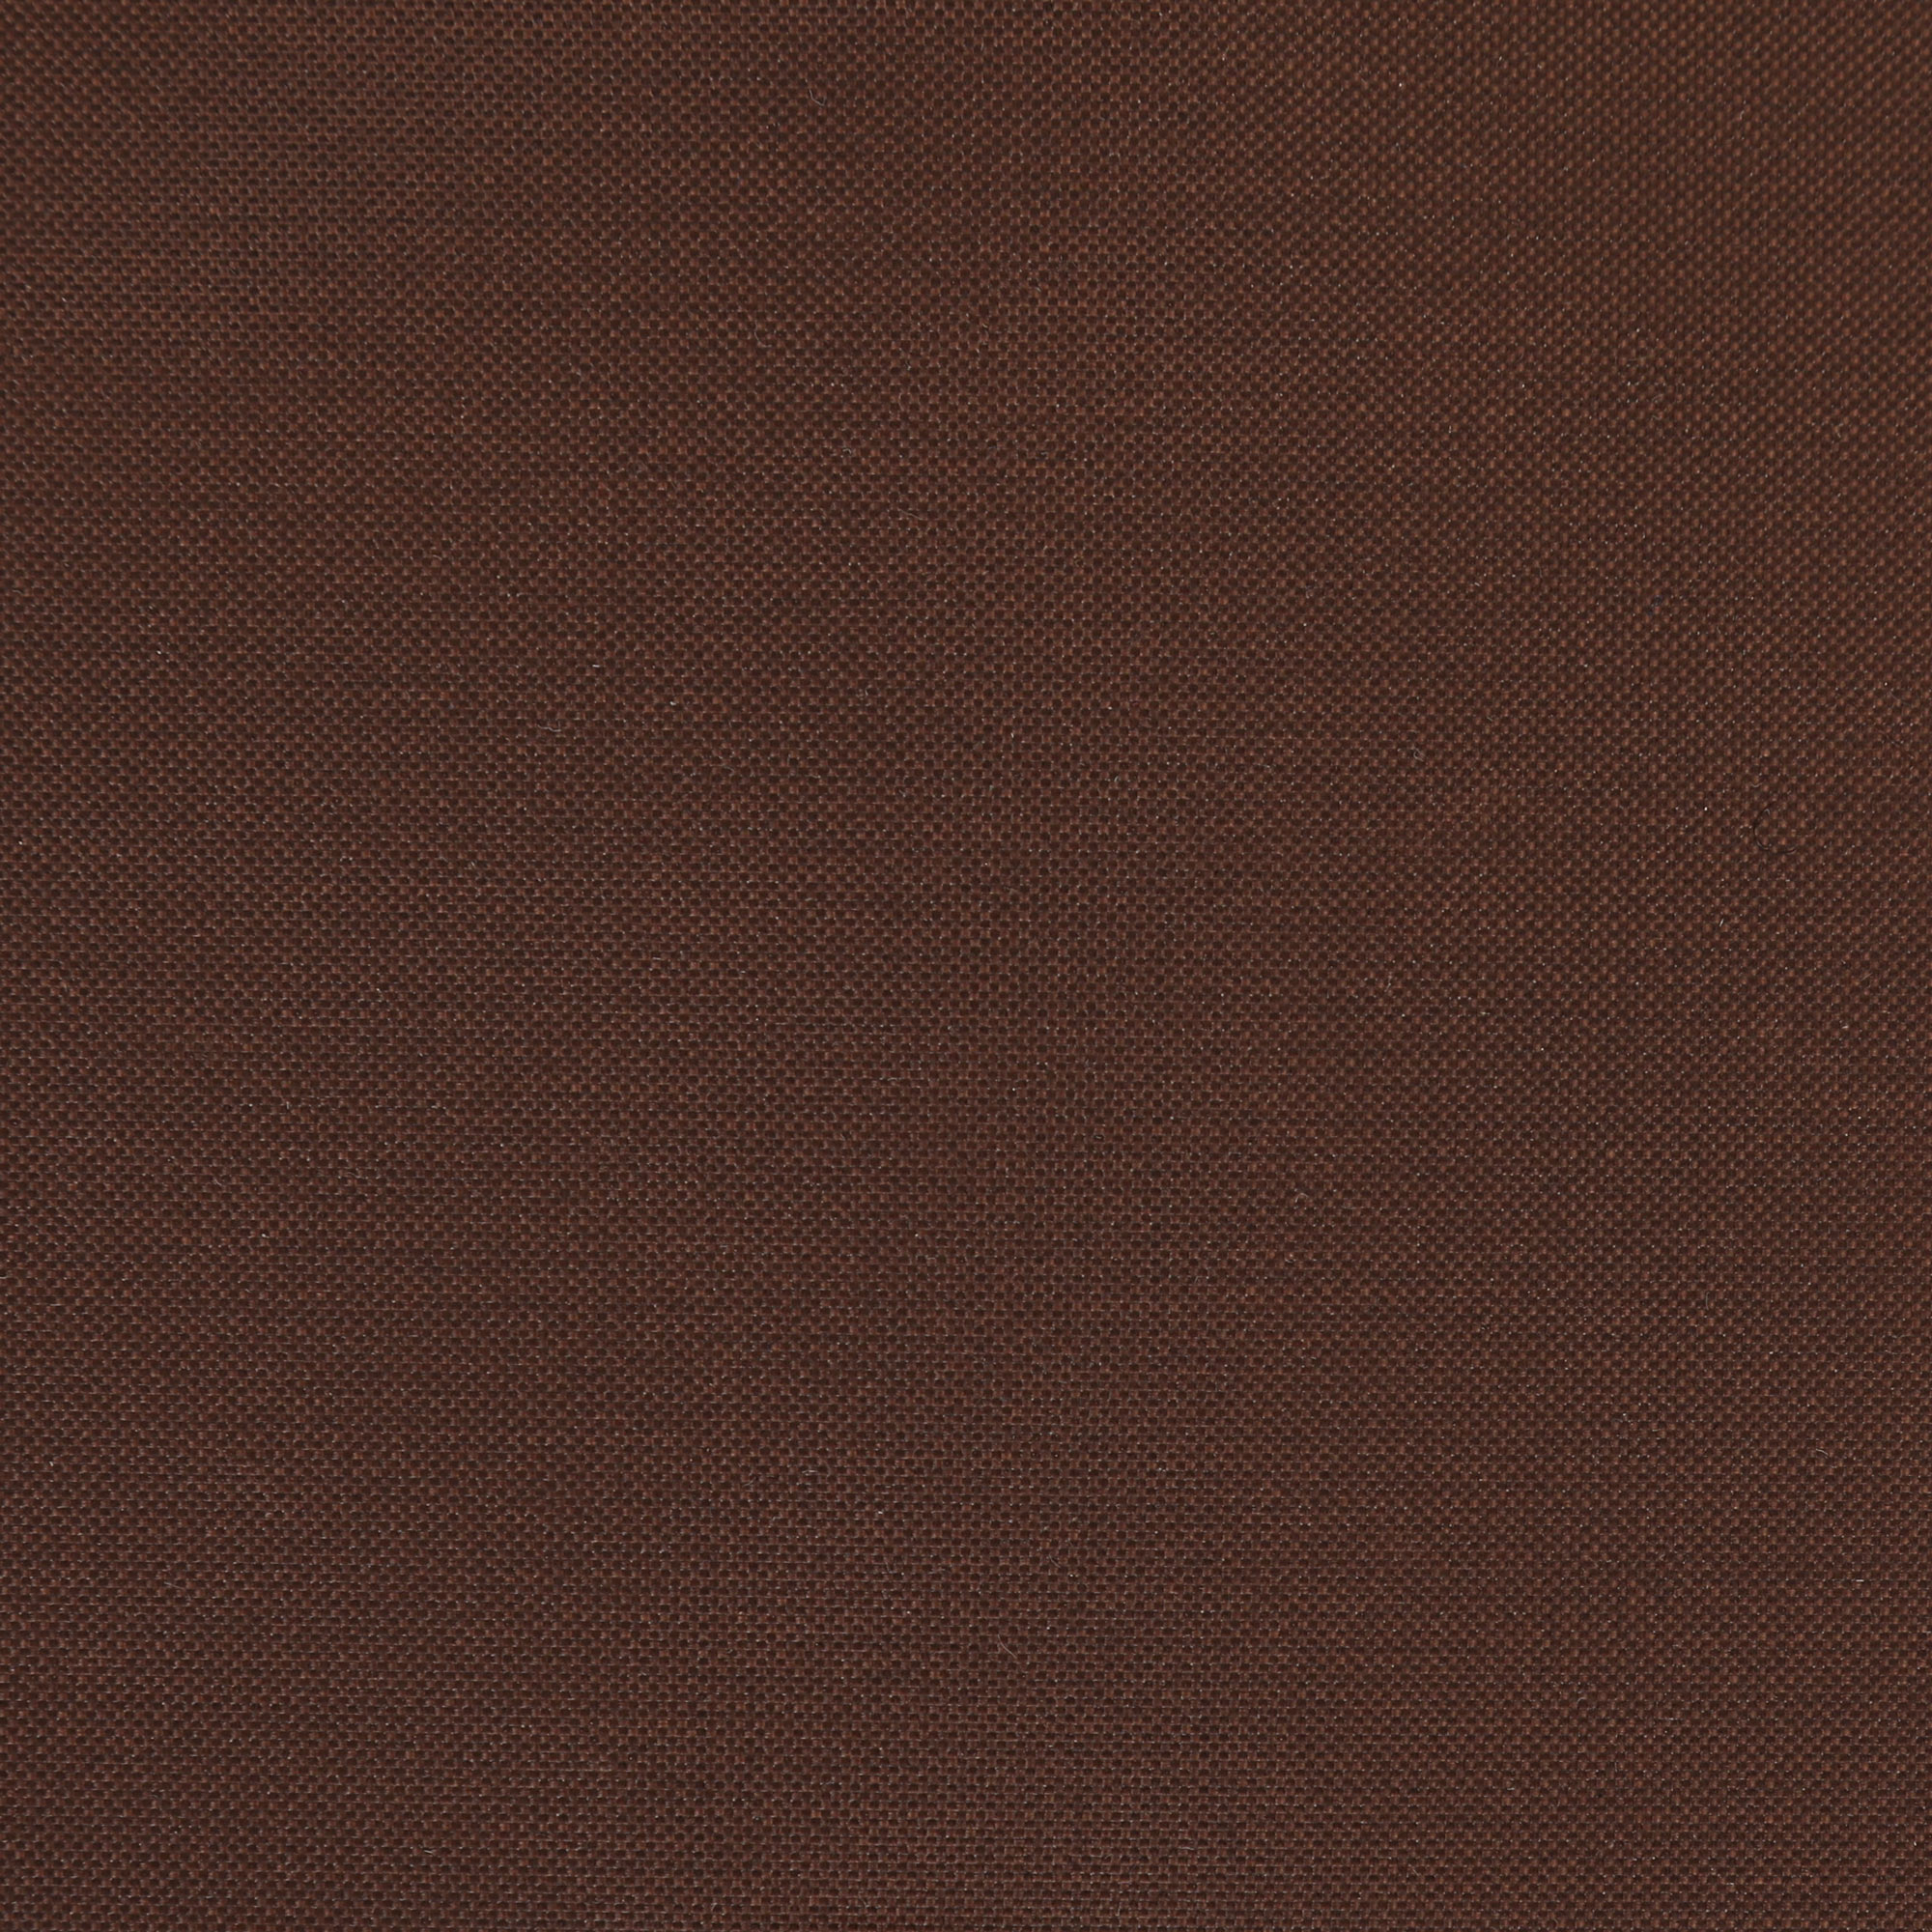 Чеxол для стола Profgarden 245x125x65 см, цвет коричневый - фото 5